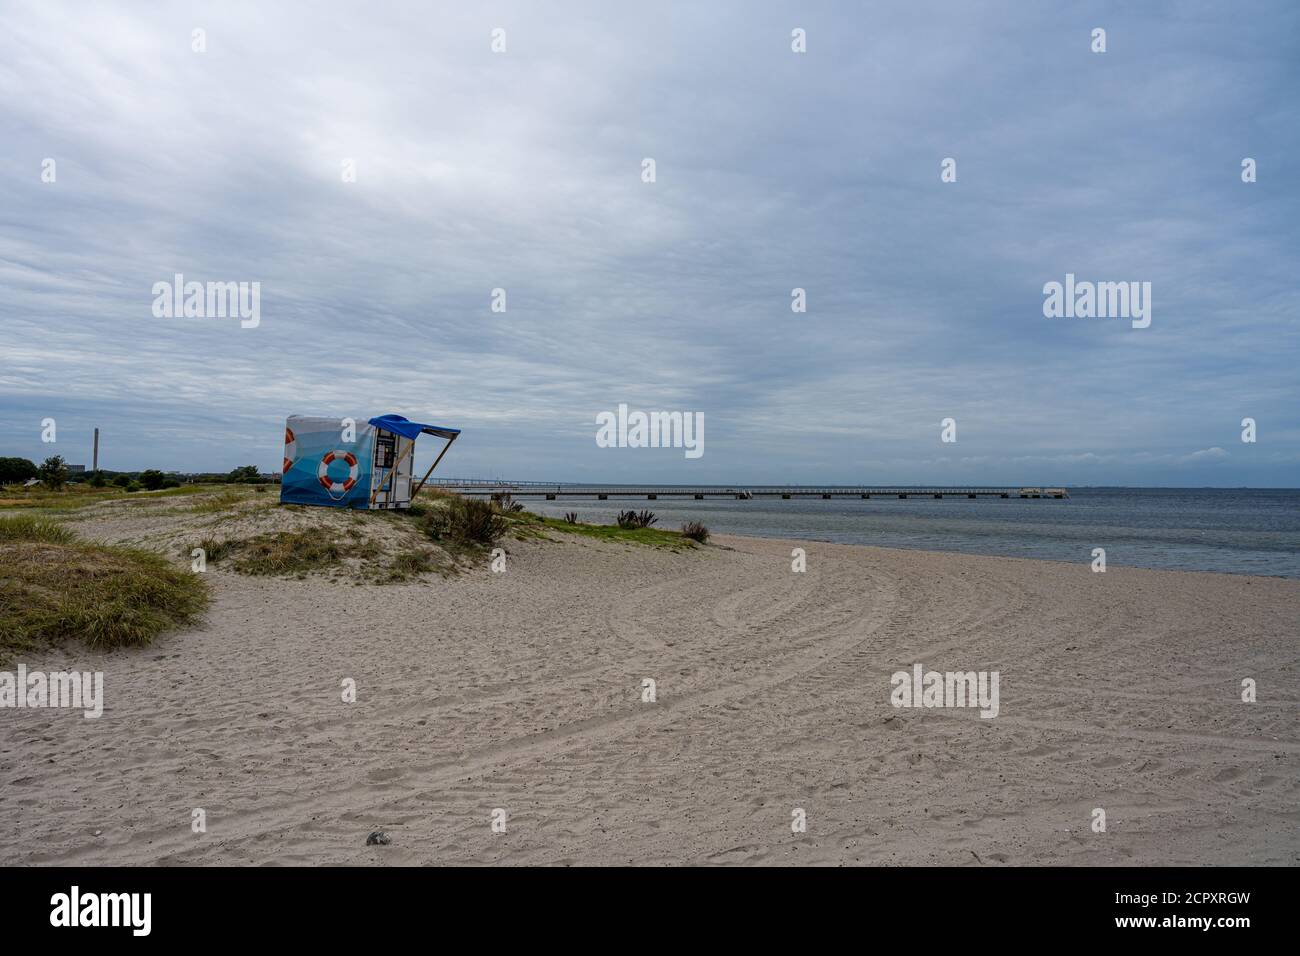 Une cabane de plage pour les sauveteurs à une plage de Malmo, dans le sud de la Suède. Bleu océan et bleu ciel nuageux Banque D'Images